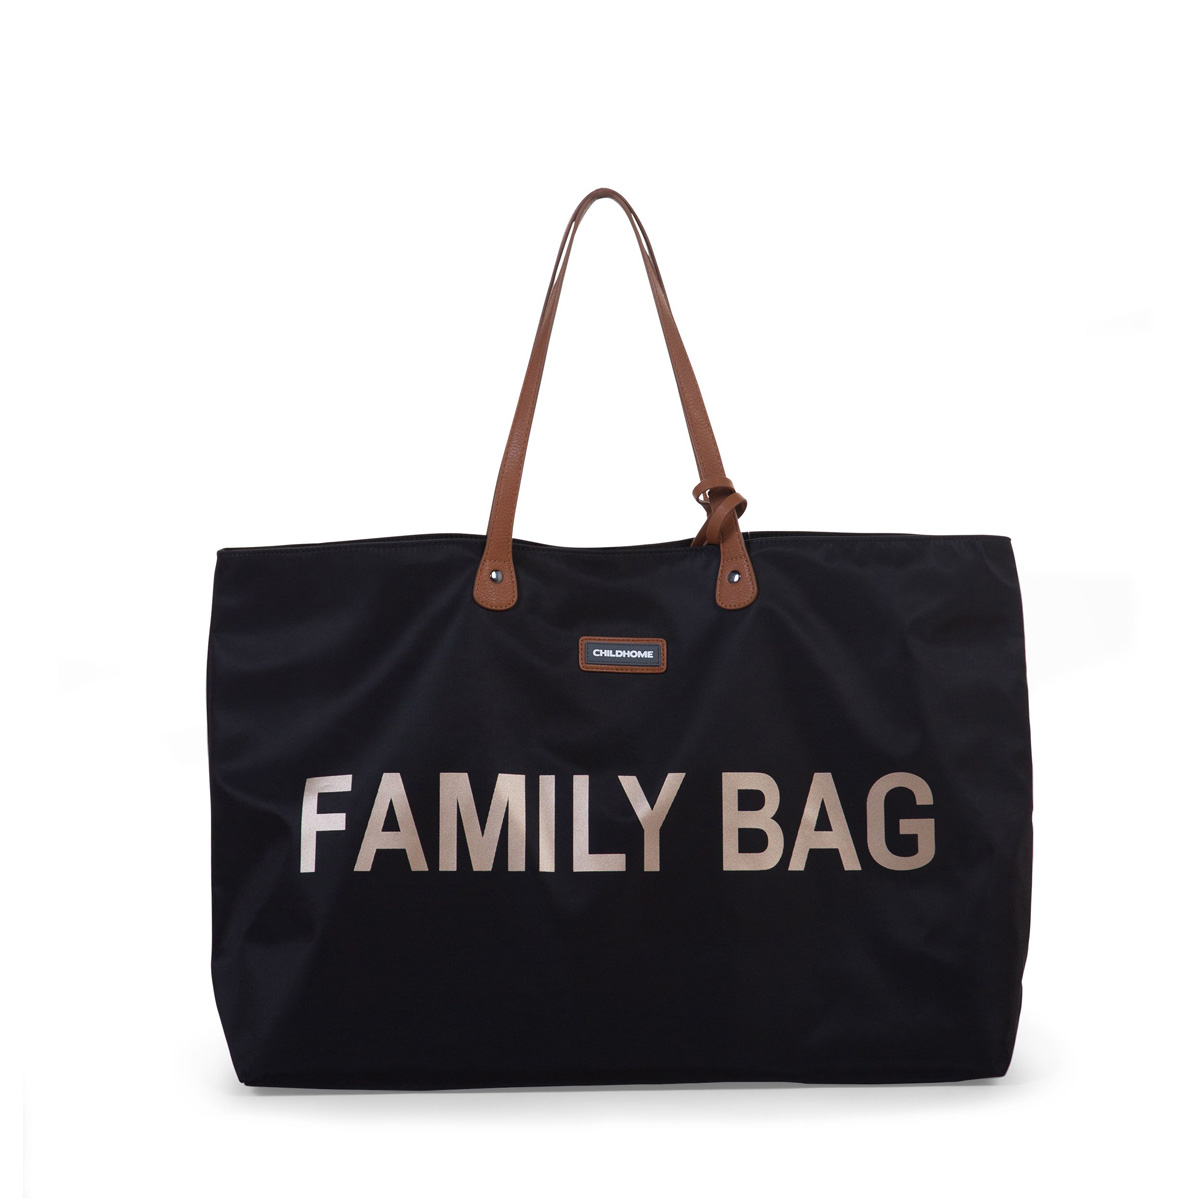 Τσάντα Αλλαξιέρα ChildHome Family Bag Black 74493 149646